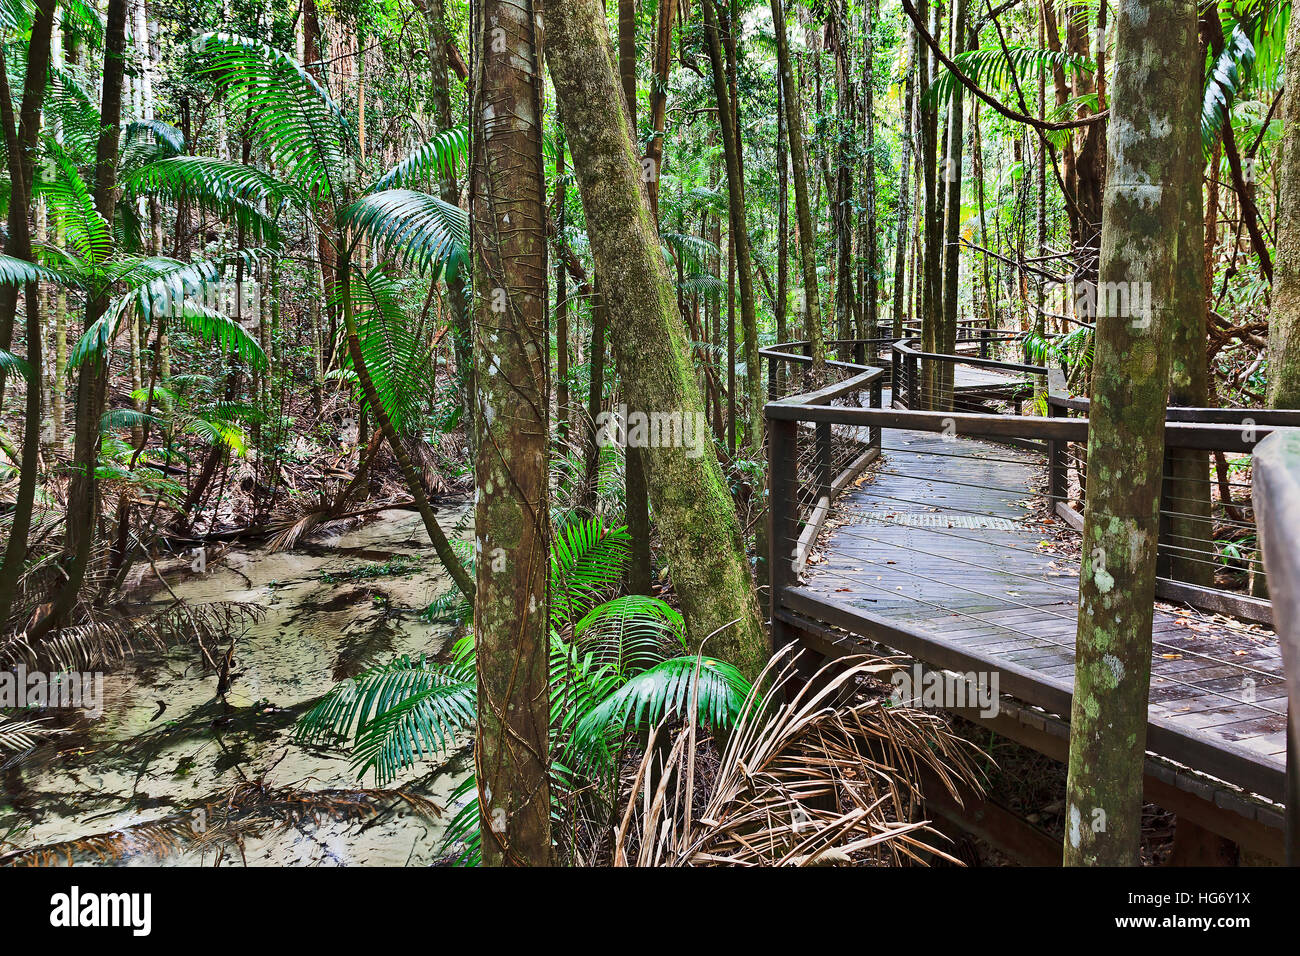 Fraser Island-Regenwald nahe Central Station entlang flachen Süßwasser fließenden Baches. Holz-Promenade für Touristen, ikonischen Natur der Par zu sehen Stockfoto